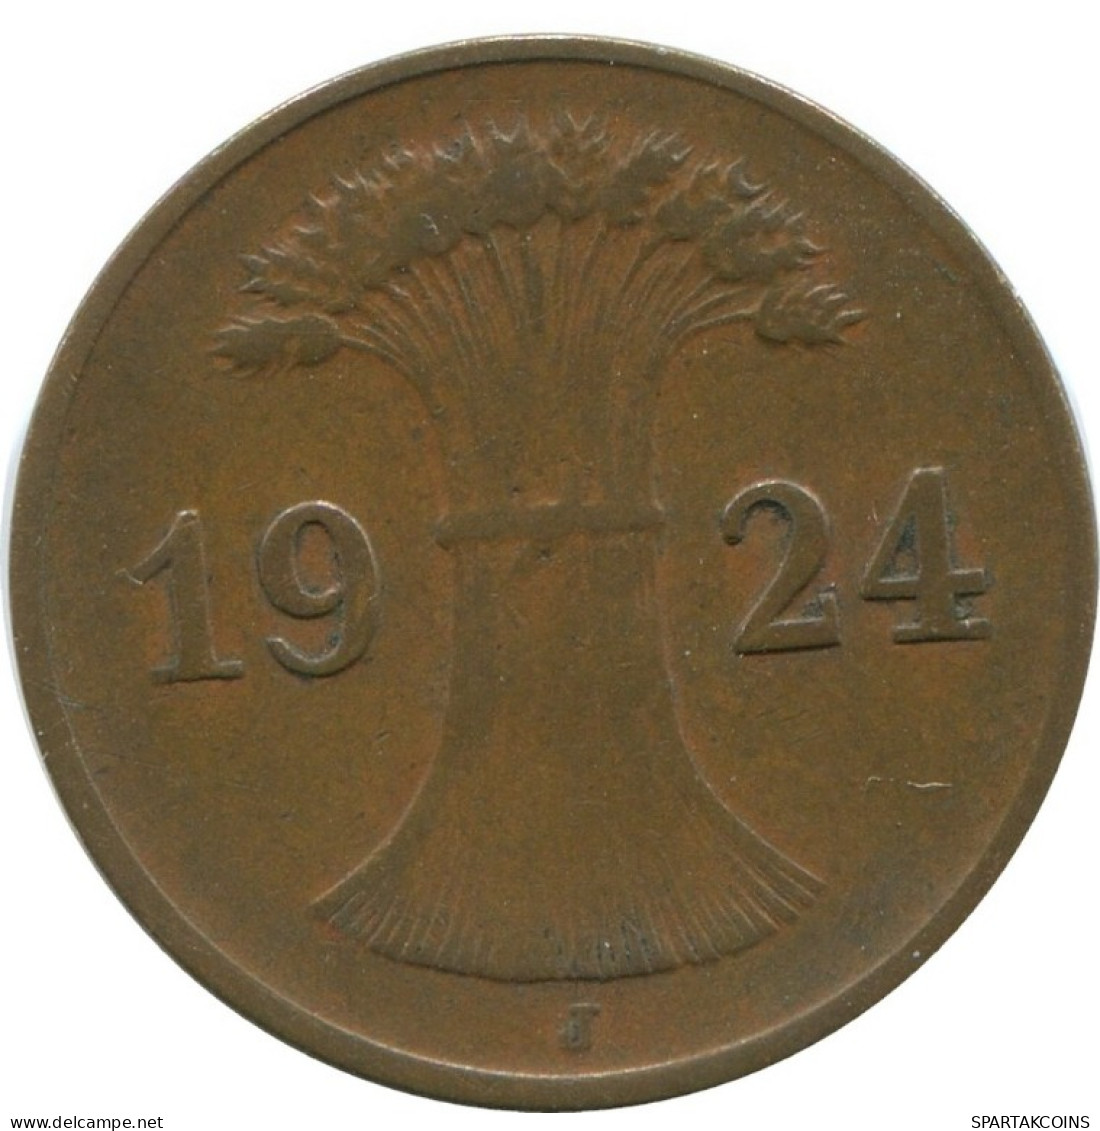 1 REICHSPFENNIG 1924 J GERMANY Coin #AD457.9.U.A - 1 Rentenpfennig & 1 Reichspfennig